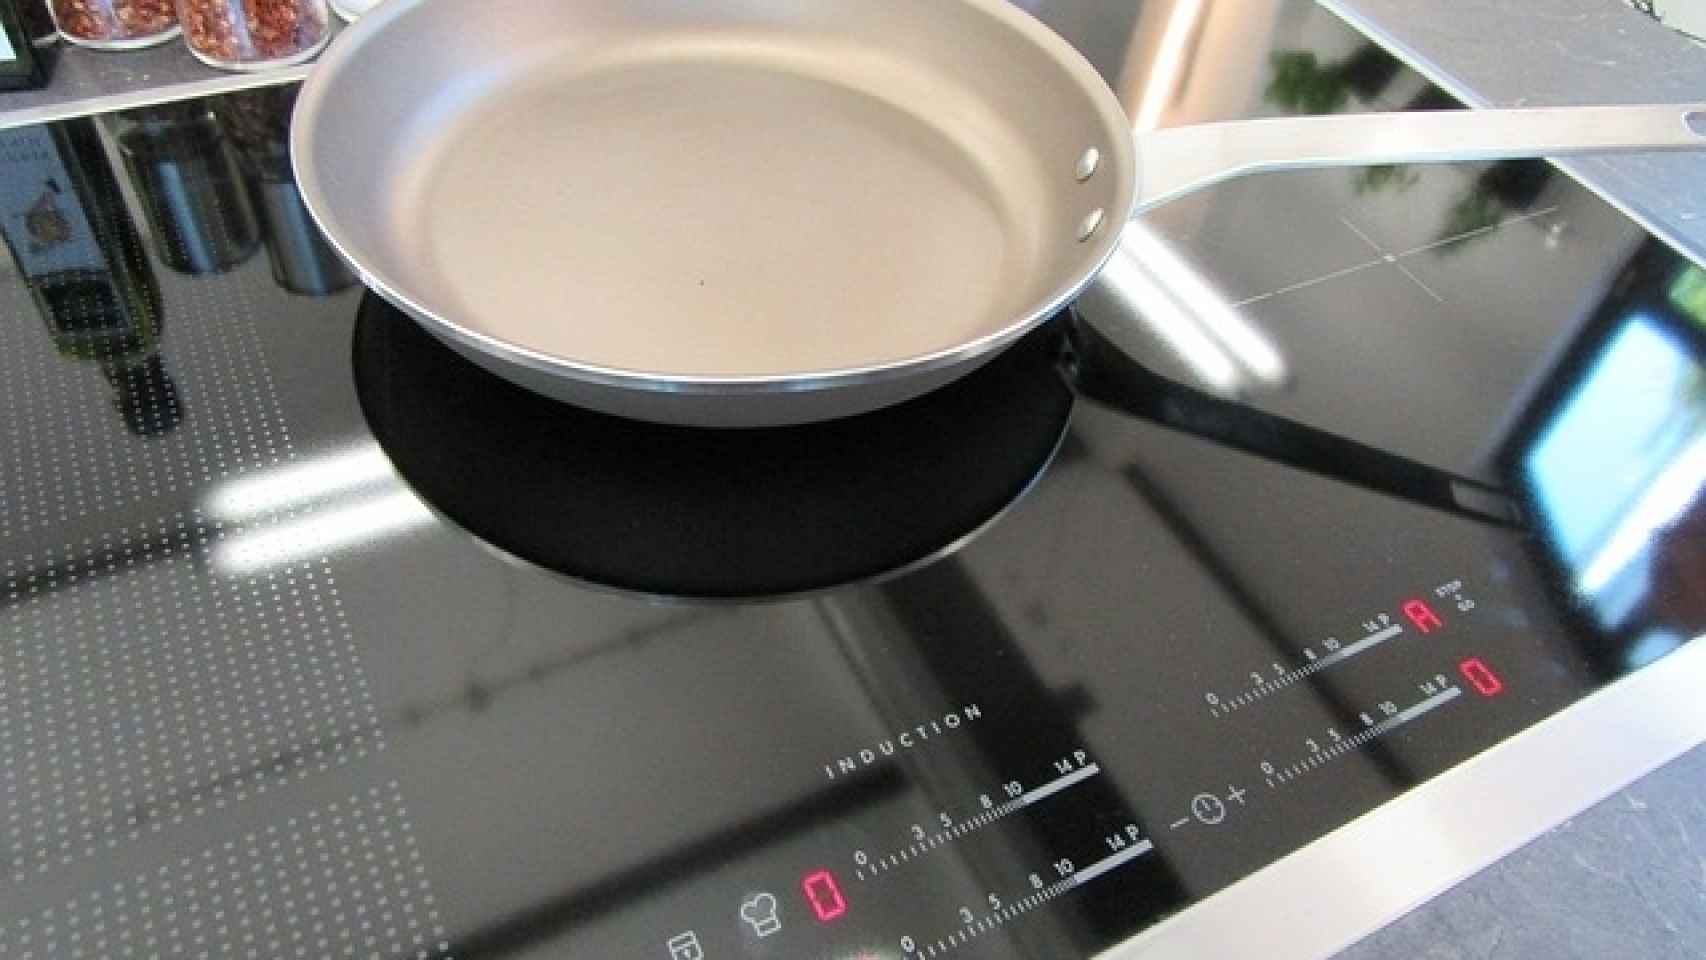 Adaptador para inducción - vitrocerámica 28 cm — Amo cocinar